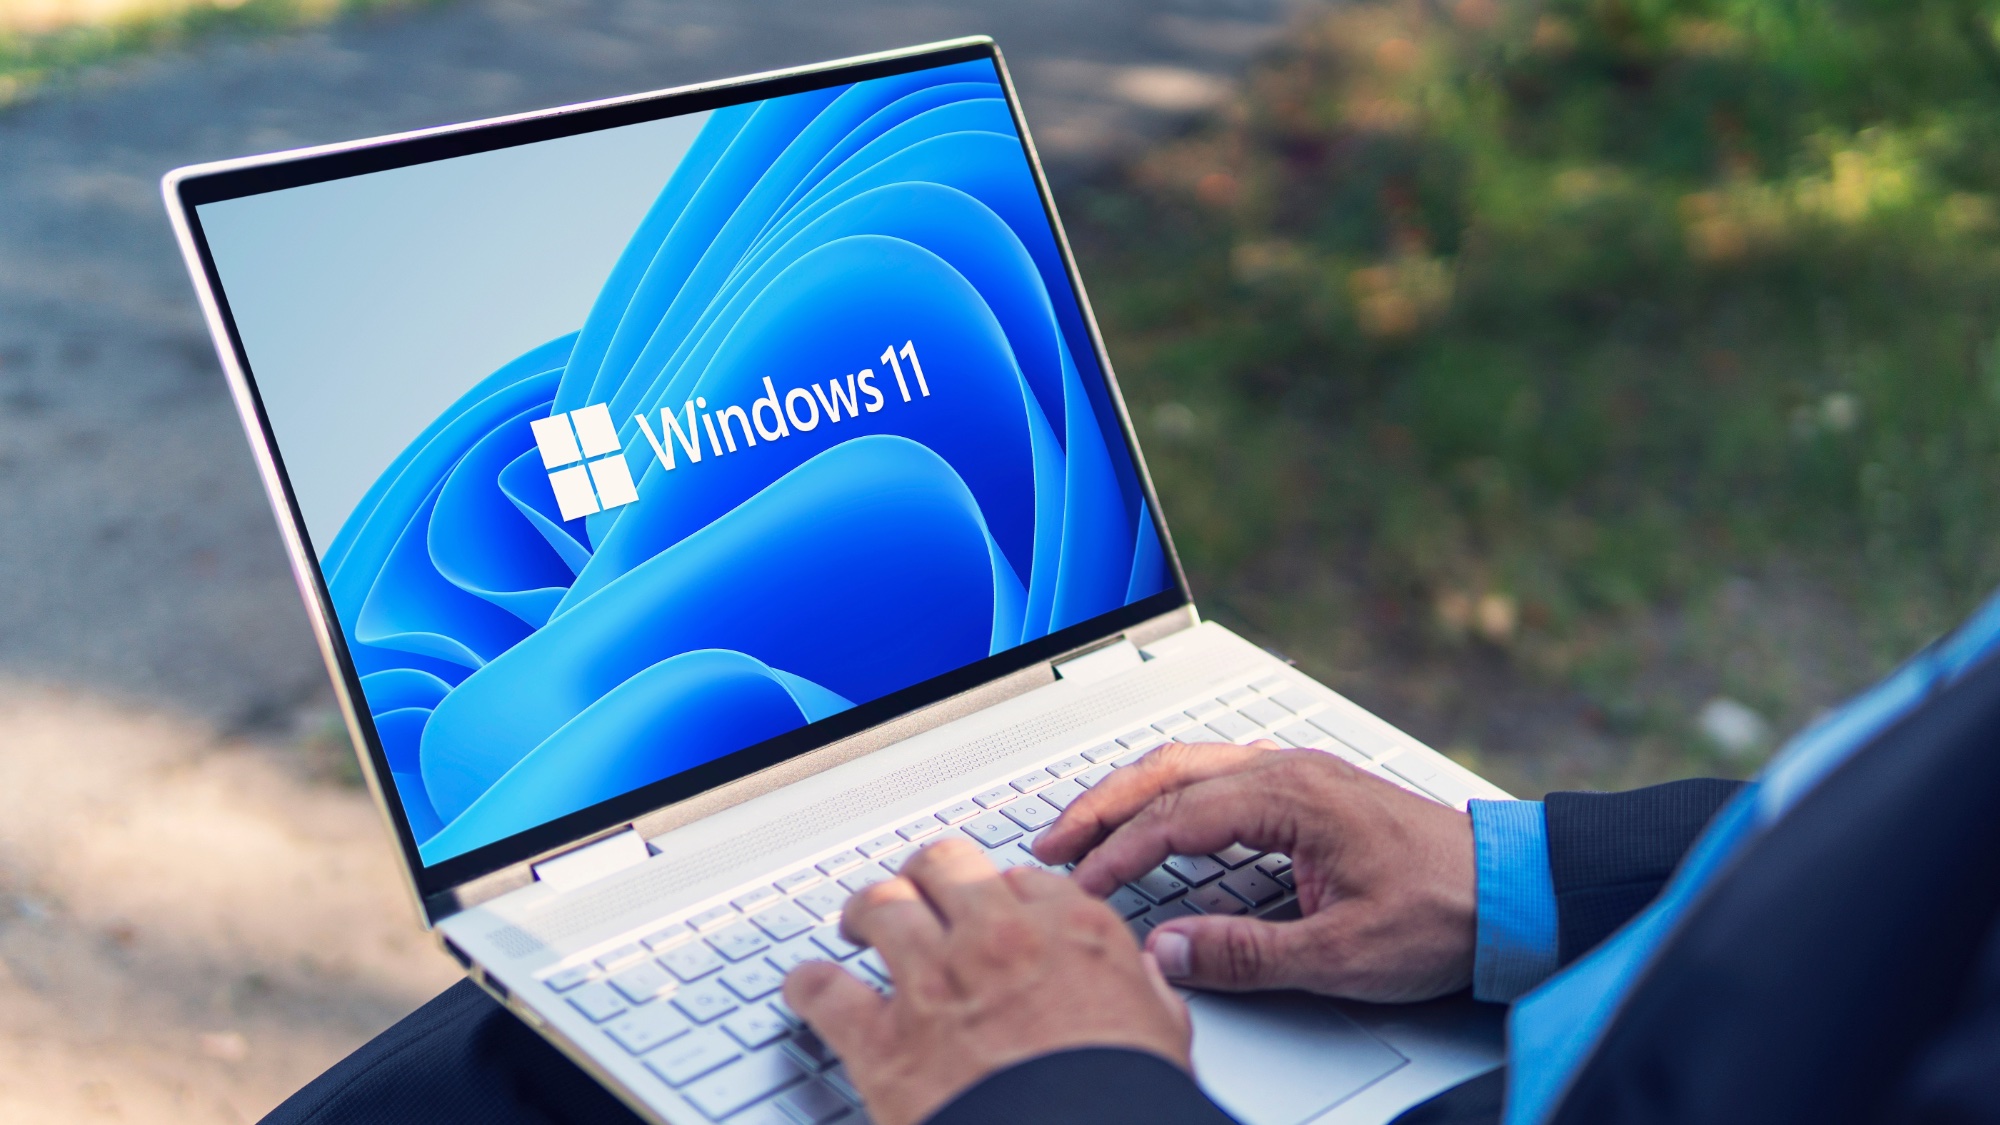 Man typing on Windows 11 laptop